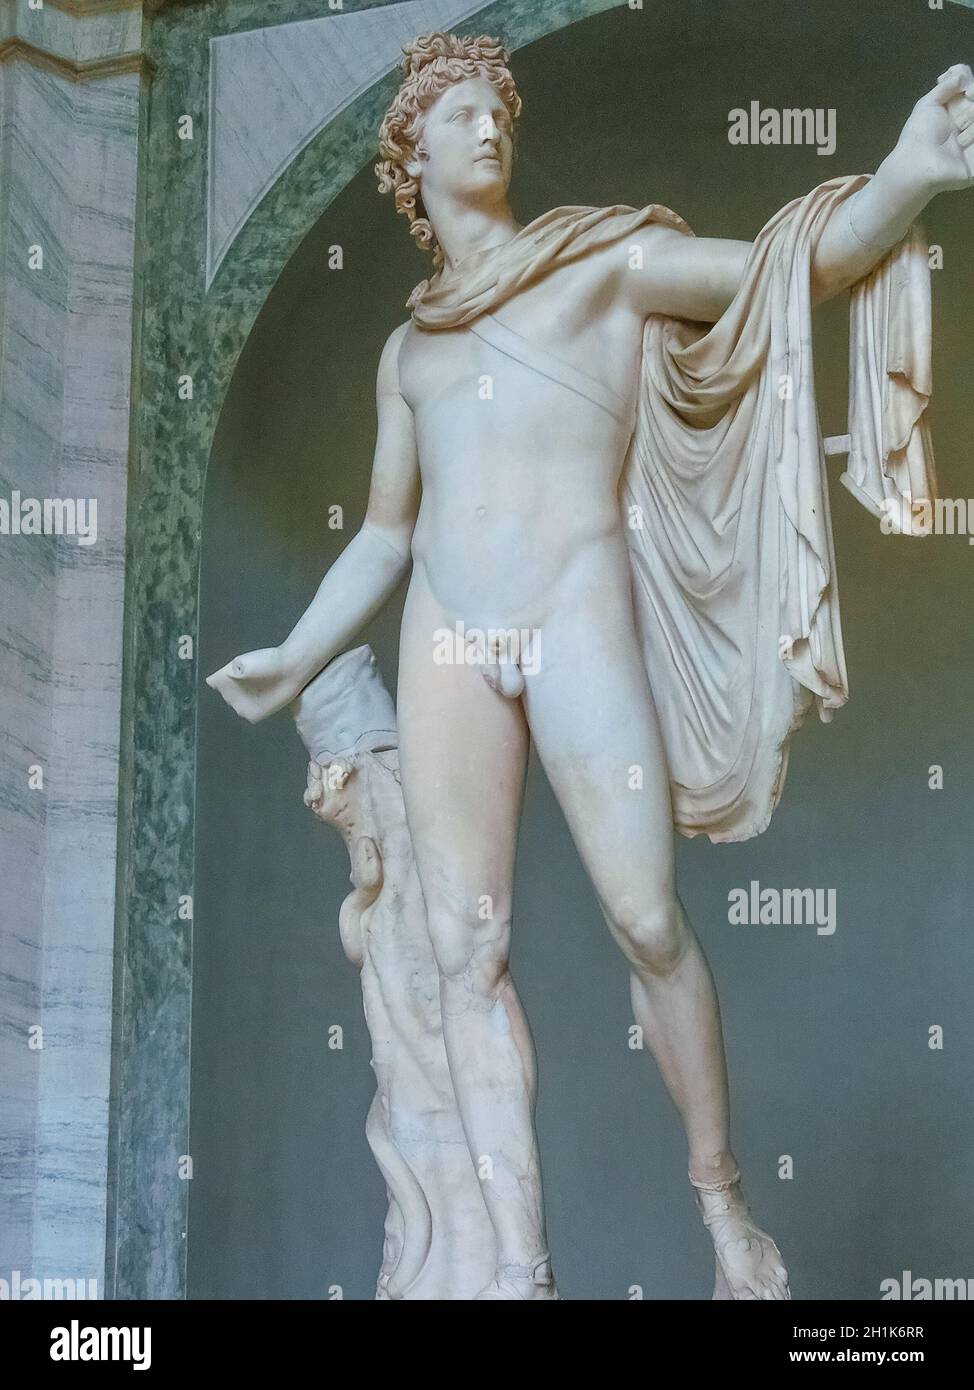 Cité du Vatican, Italie - 02 mai 2014 : sculpture grecque classique au Musée du Vatican à la Cité du Vatican, Italie, le 02 mai 2014 Banque D'Images